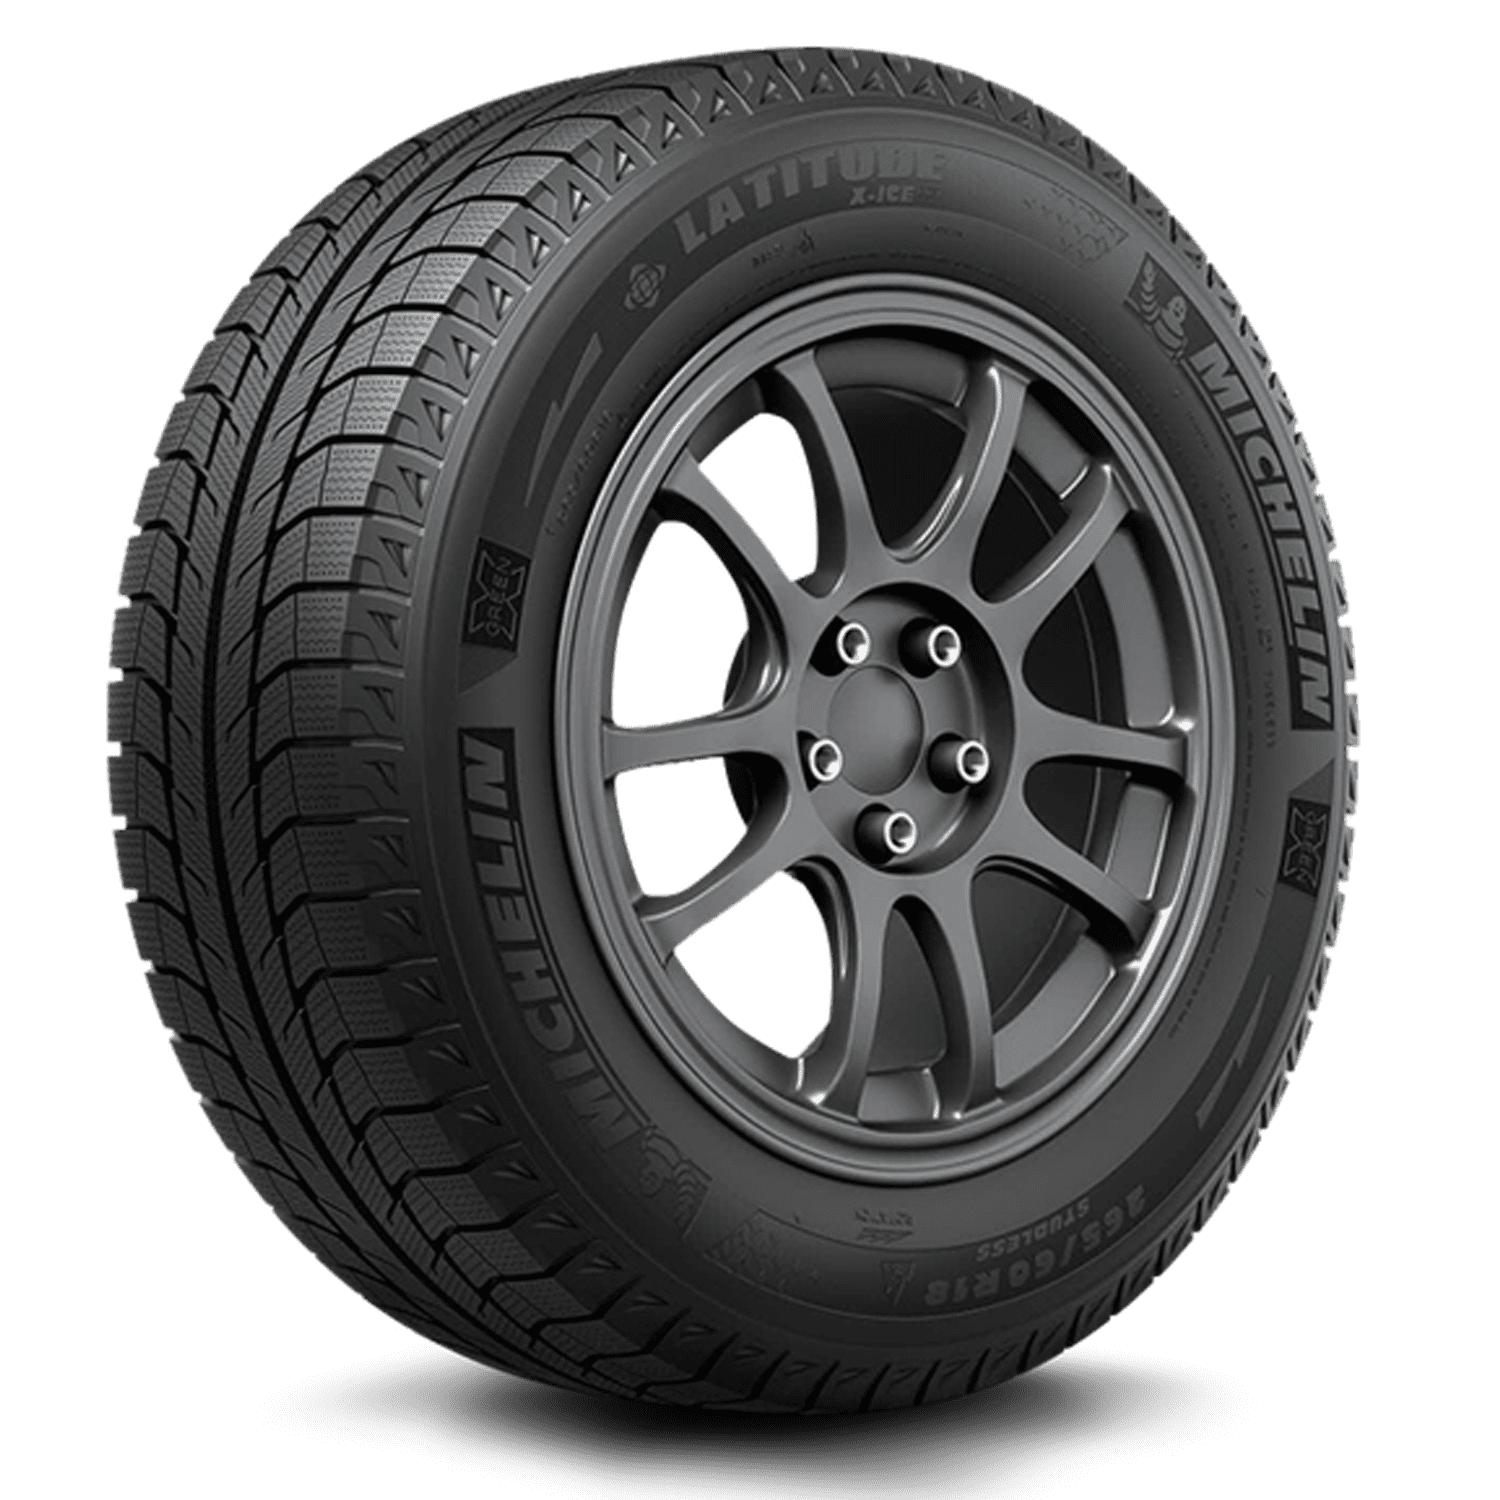 Michelin Latitude X-Ice Xi2 Winter 265/70R16 112T Passenger Tire